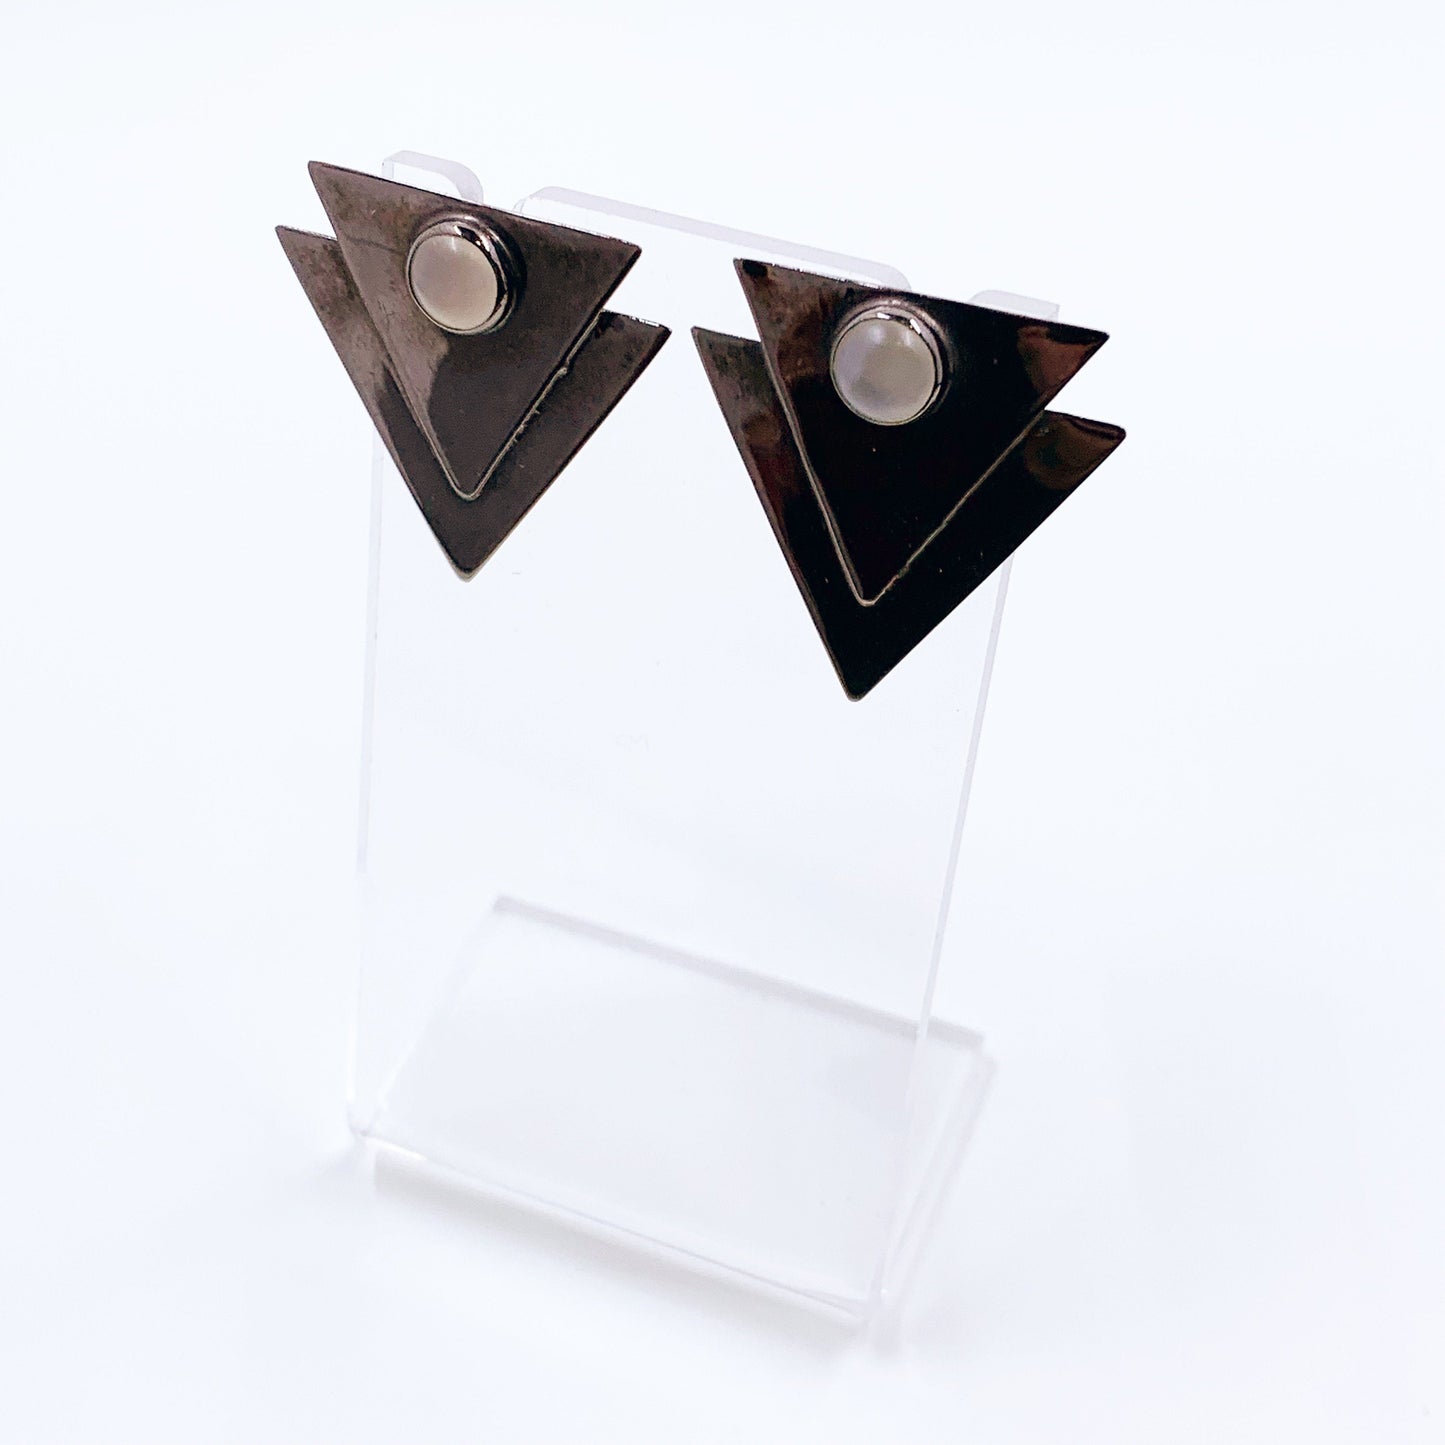 Vintage Silver GFMW Modernist Triangle Moonstone Earrings | Great Falls Metal Works Earrings